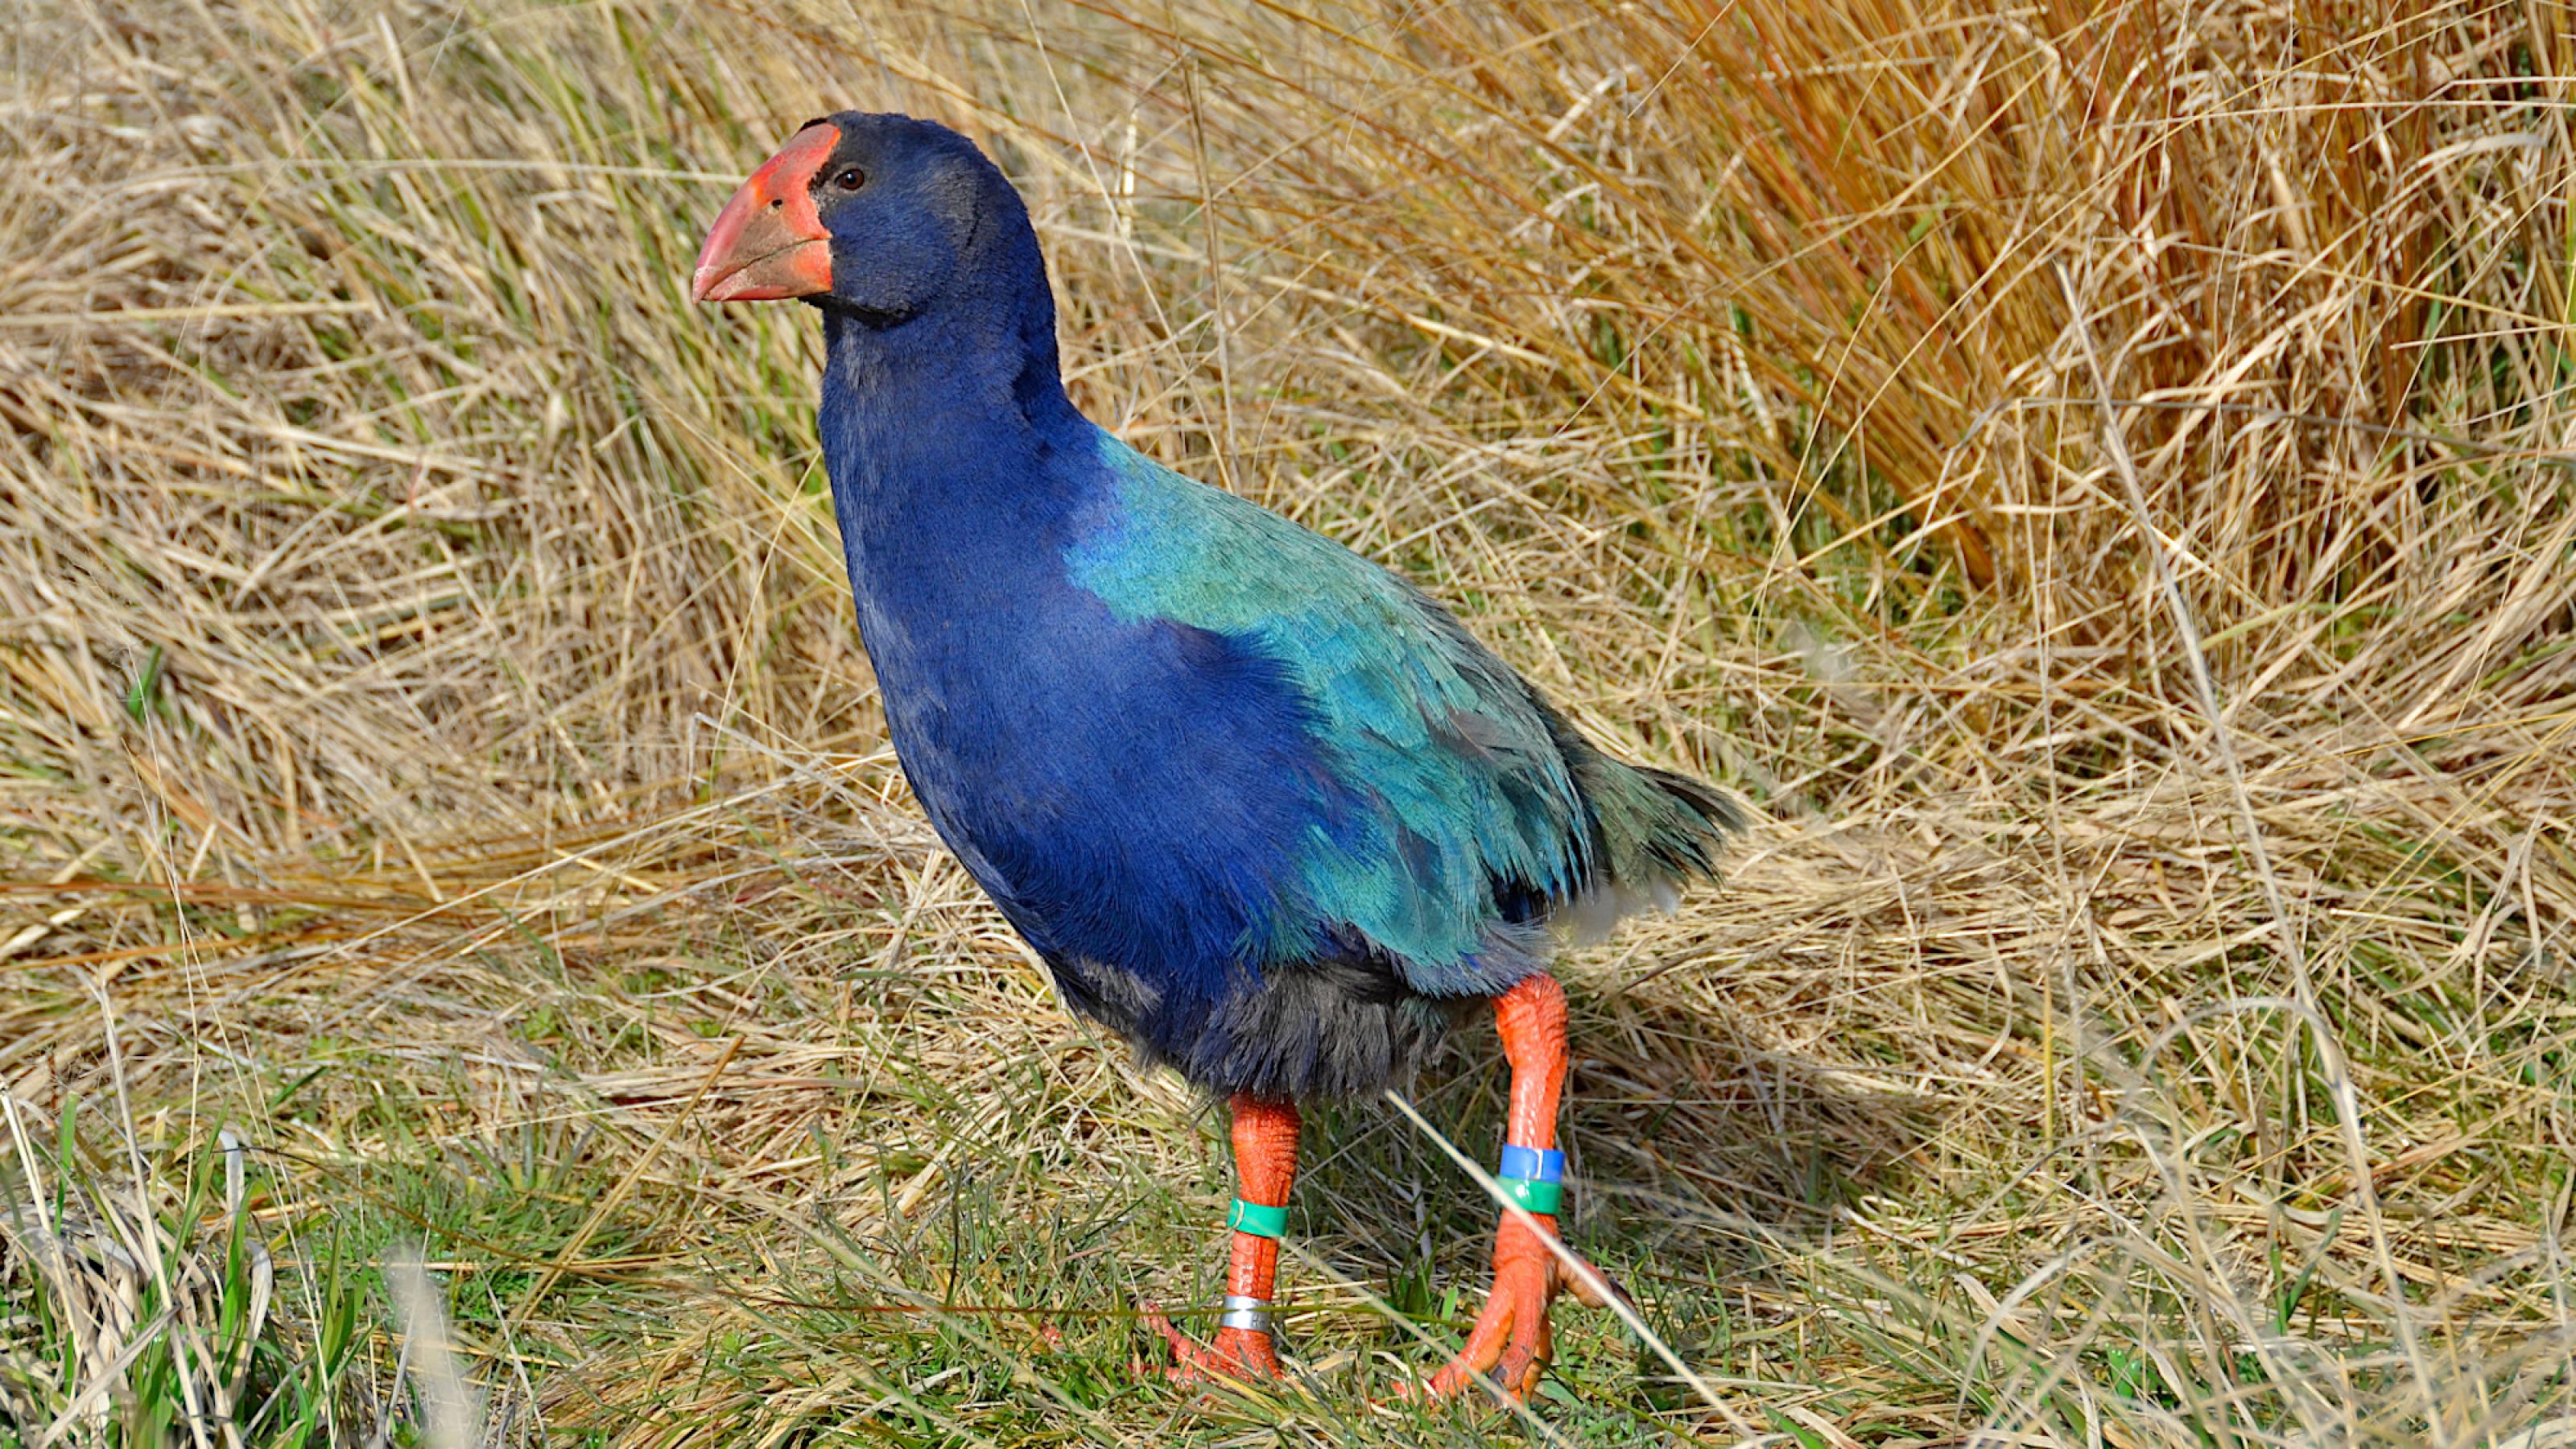 Ein blau-grüner Vogel mit rotem Schnabel und kräftigen roten Beinen steht in hohem Gras.